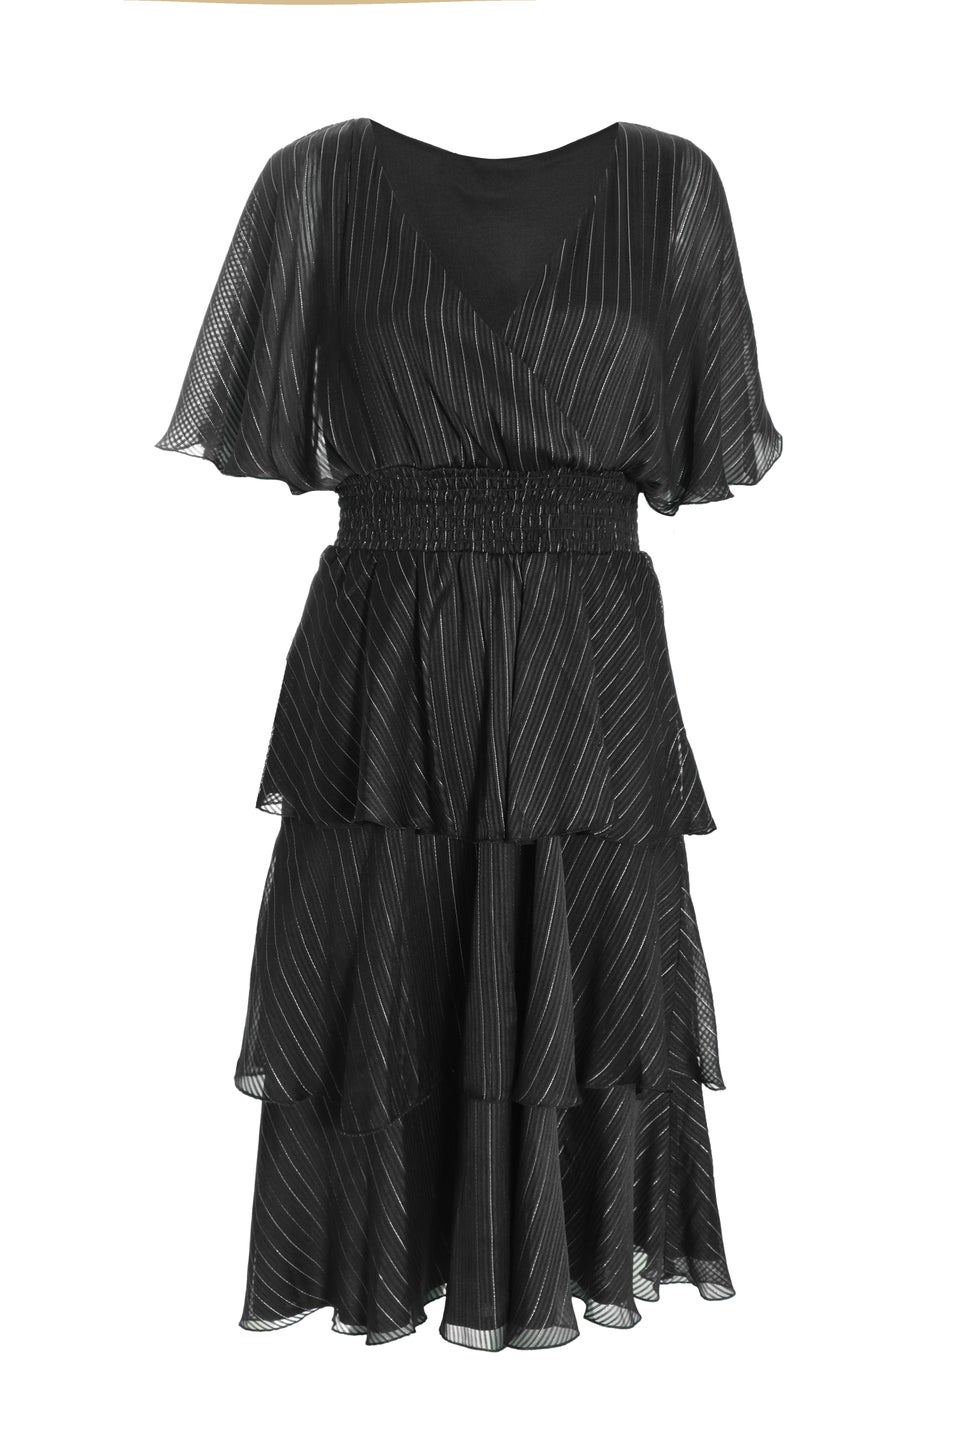 Quiz Black Glitter Chiffon Tiered Midi Dress - Matalan